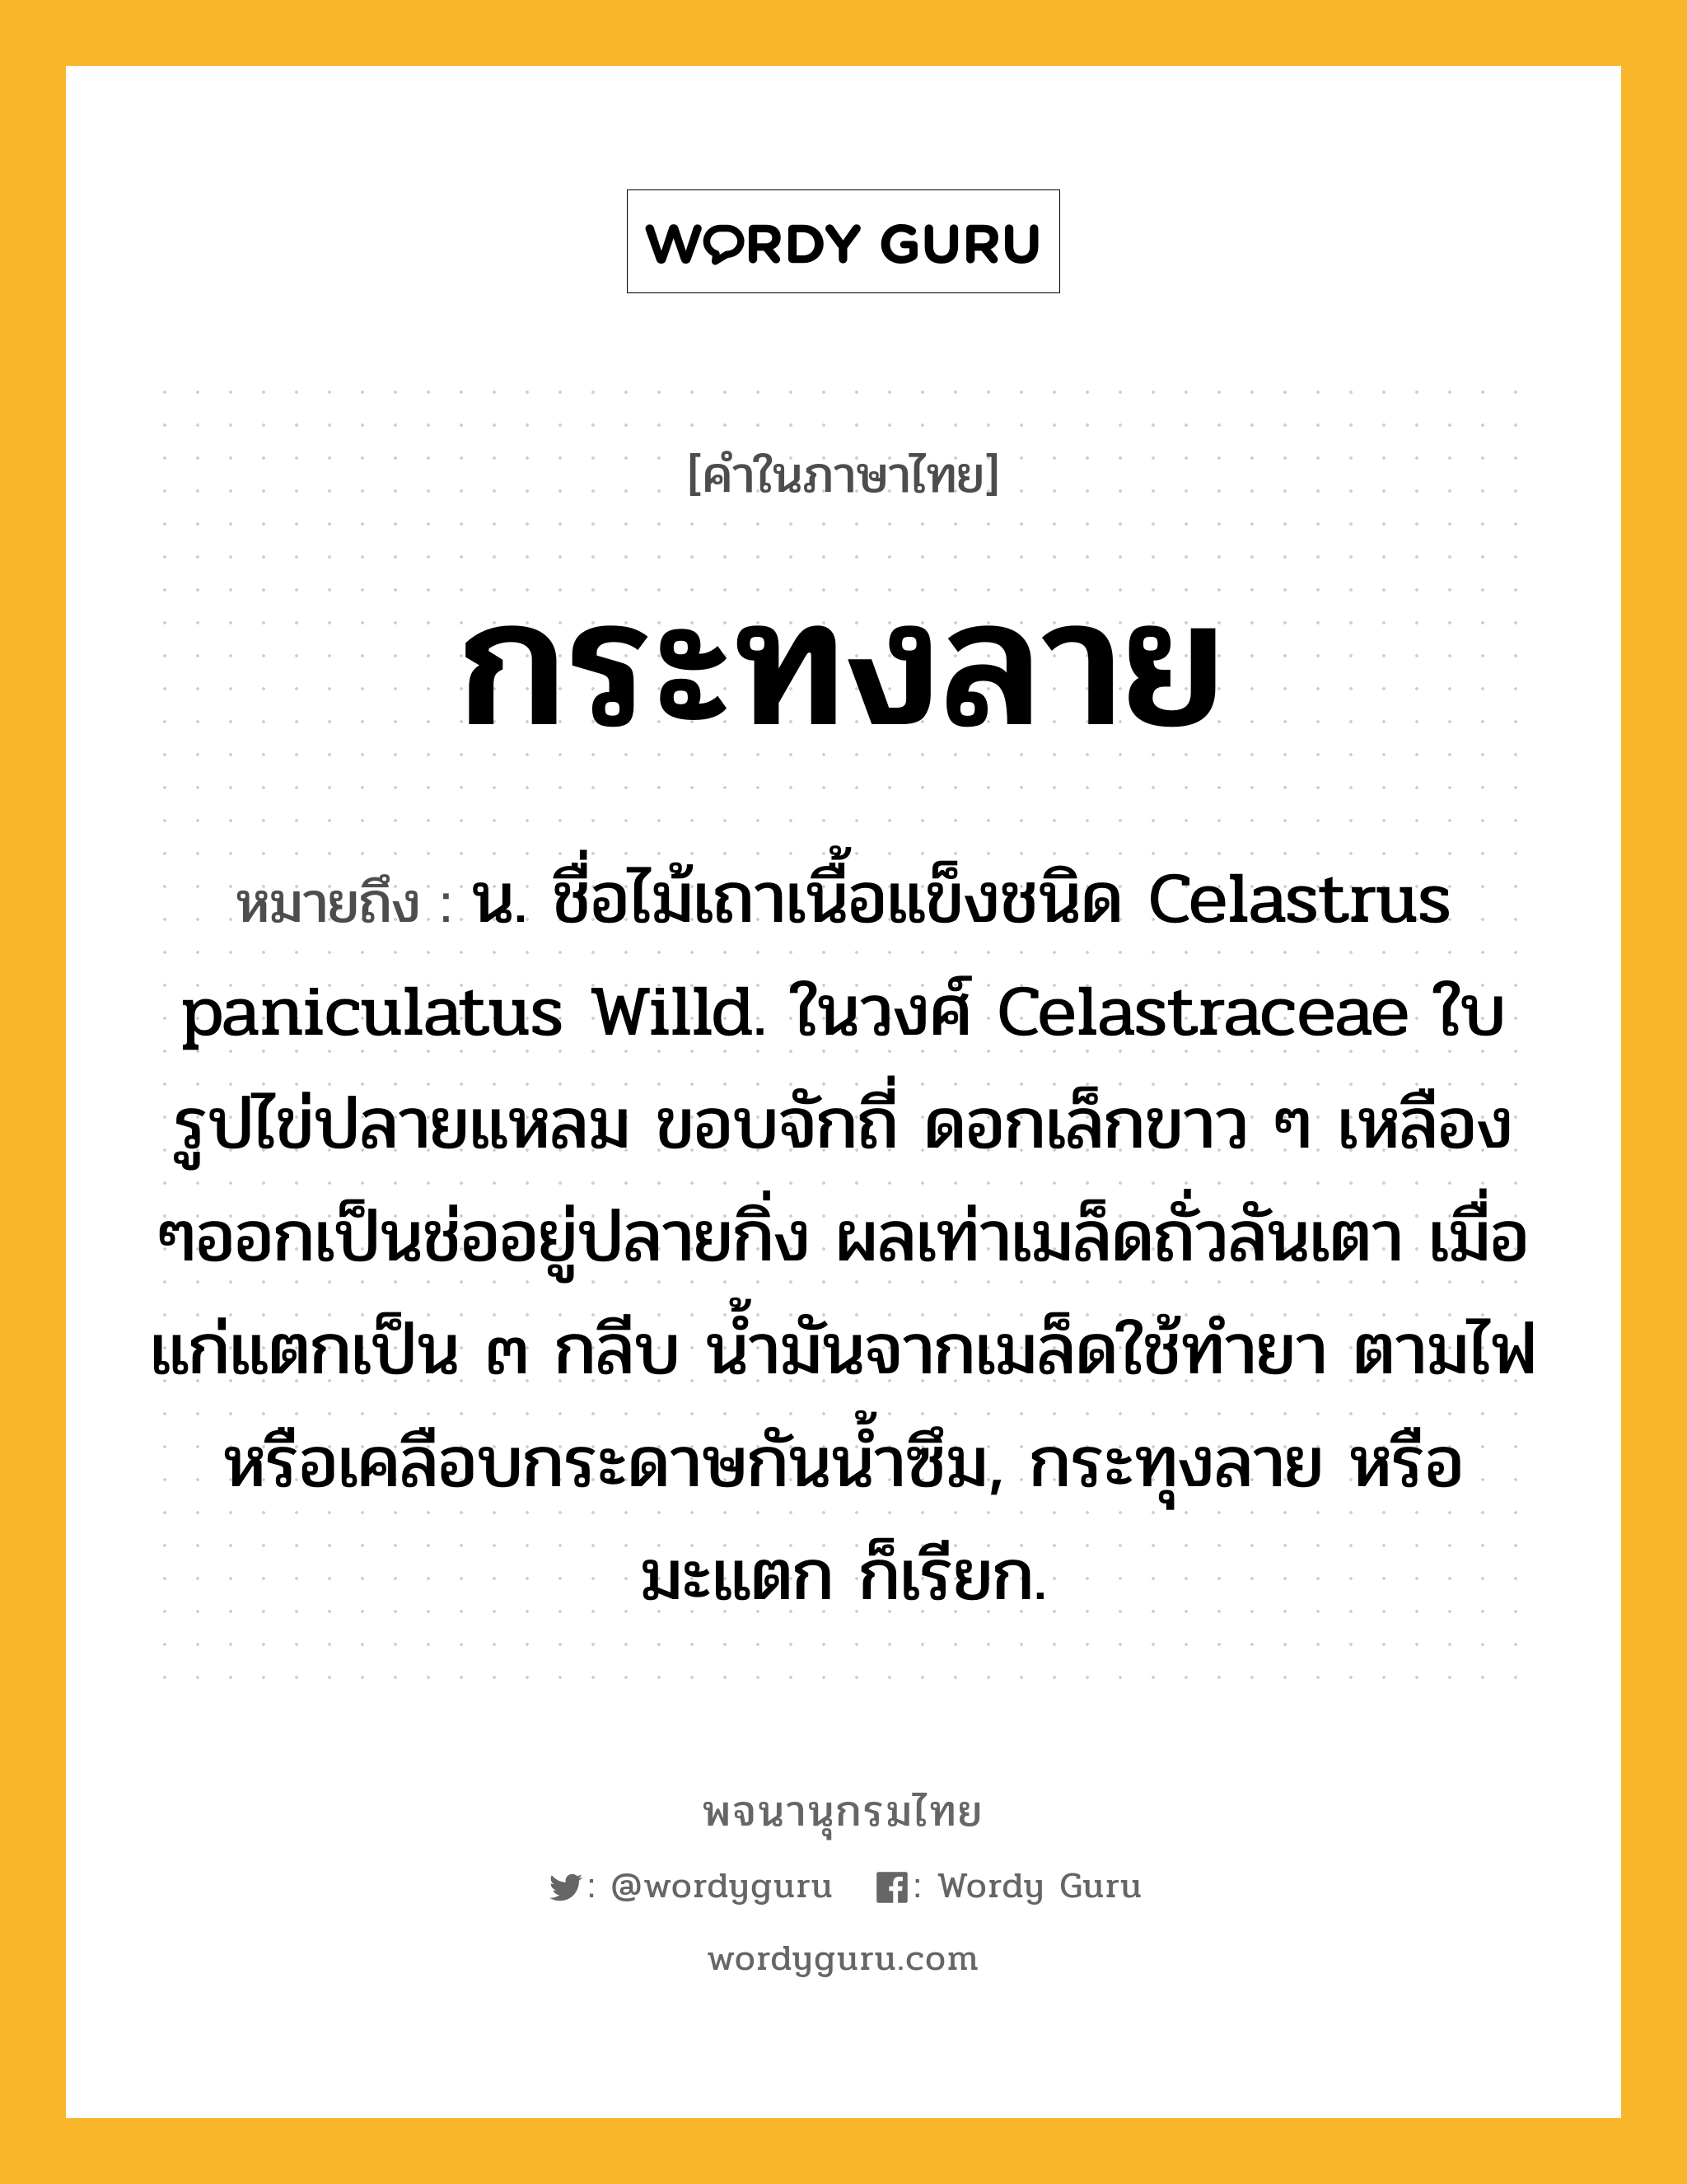 กระทงลาย ความหมาย หมายถึงอะไร?, คำในภาษาไทย กระทงลาย หมายถึง น. ชื่อไม้เถาเนื้อแข็งชนิด Celastrus paniculatus Willd. ในวงศ์ Celastraceae ใบรูปไข่ปลายแหลม ขอบจักถี่ ดอกเล็กขาว ๆ เหลือง ๆออกเป็นช่ออยู่ปลายกิ่ง ผลเท่าเมล็ดถั่วลันเตา เมื่อแก่แตกเป็น ๓ กลีบ นํ้ามันจากเมล็ดใช้ทํายา ตามไฟ หรือเคลือบกระดาษกันนํ้าซึม, กระทุงลาย หรือ มะแตก ก็เรียก.